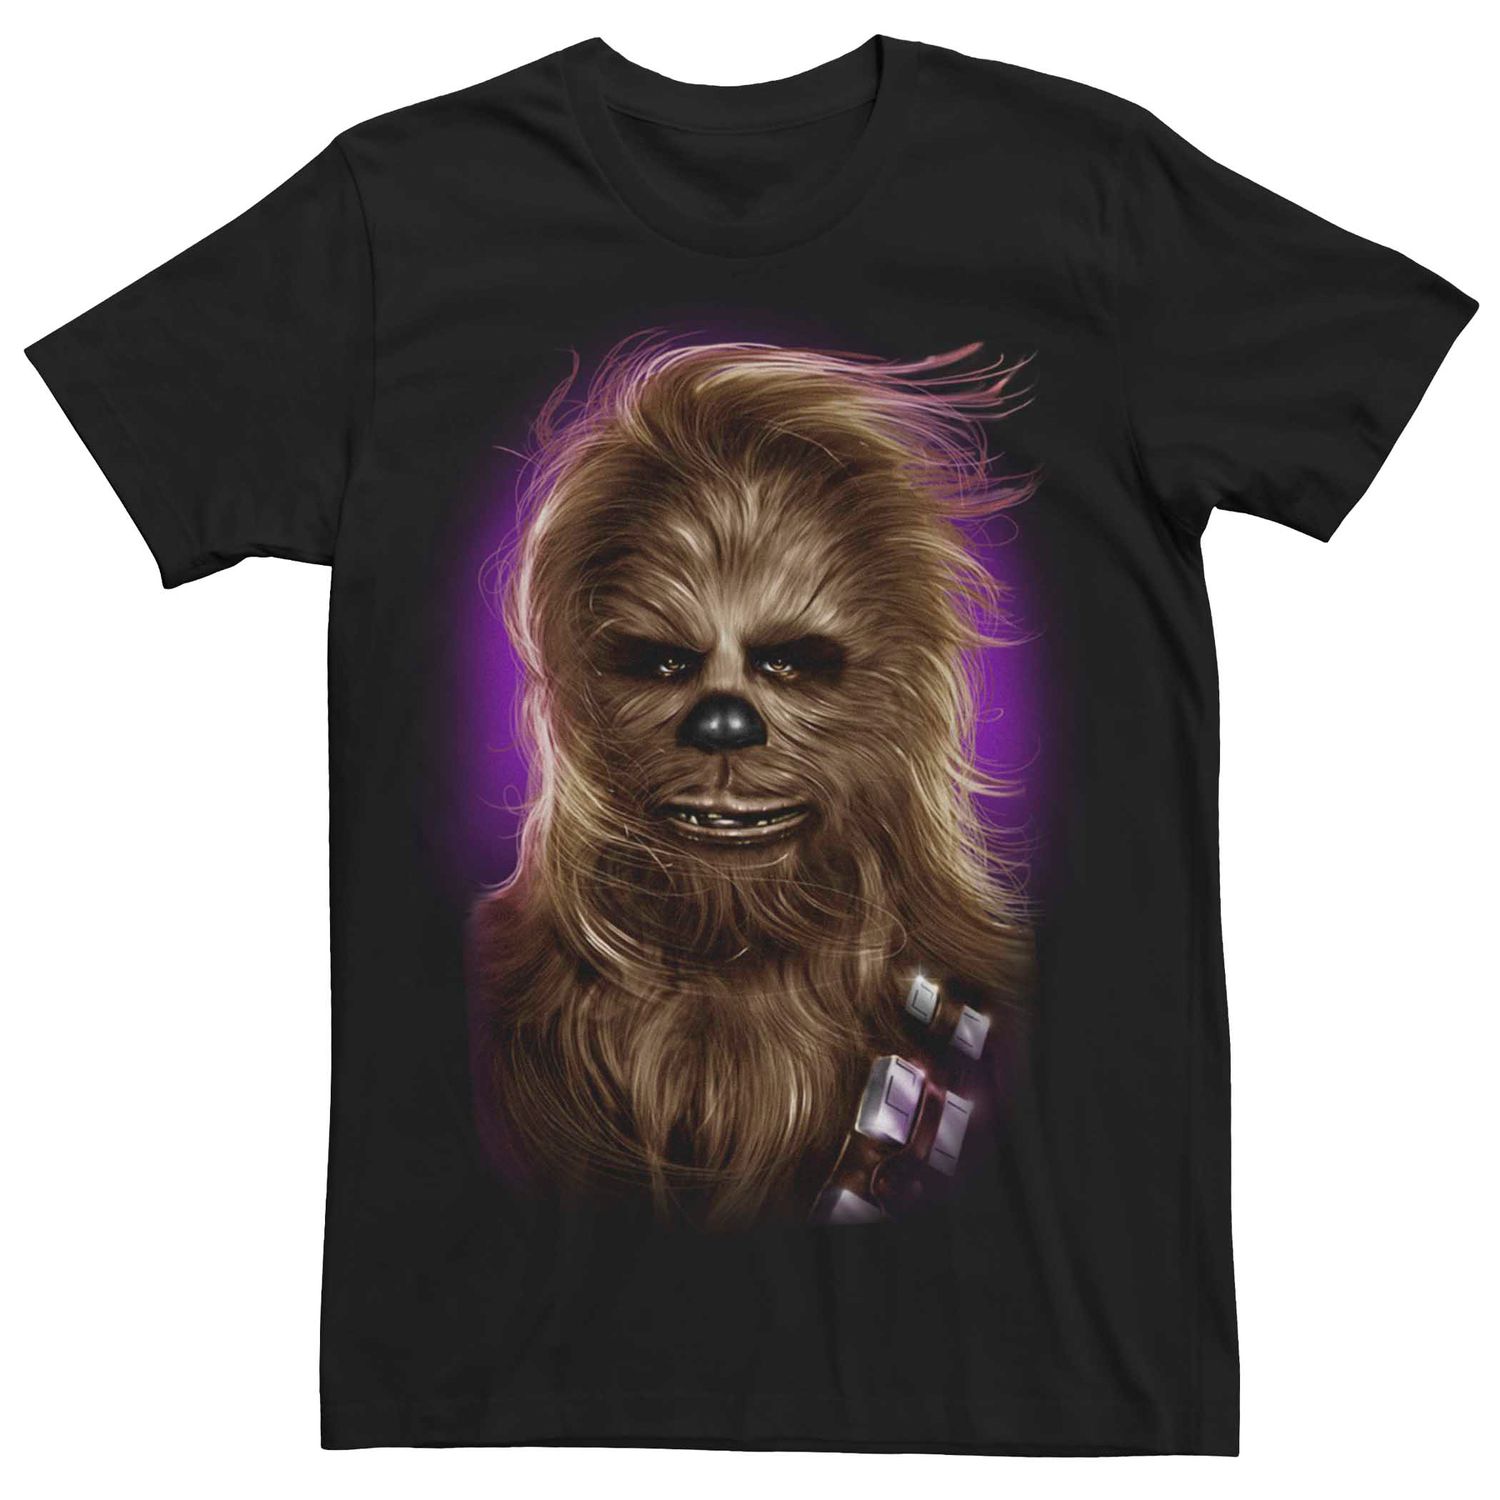 Мужская футболка с портретом Чубакки «Звездные войны» Licensed Character